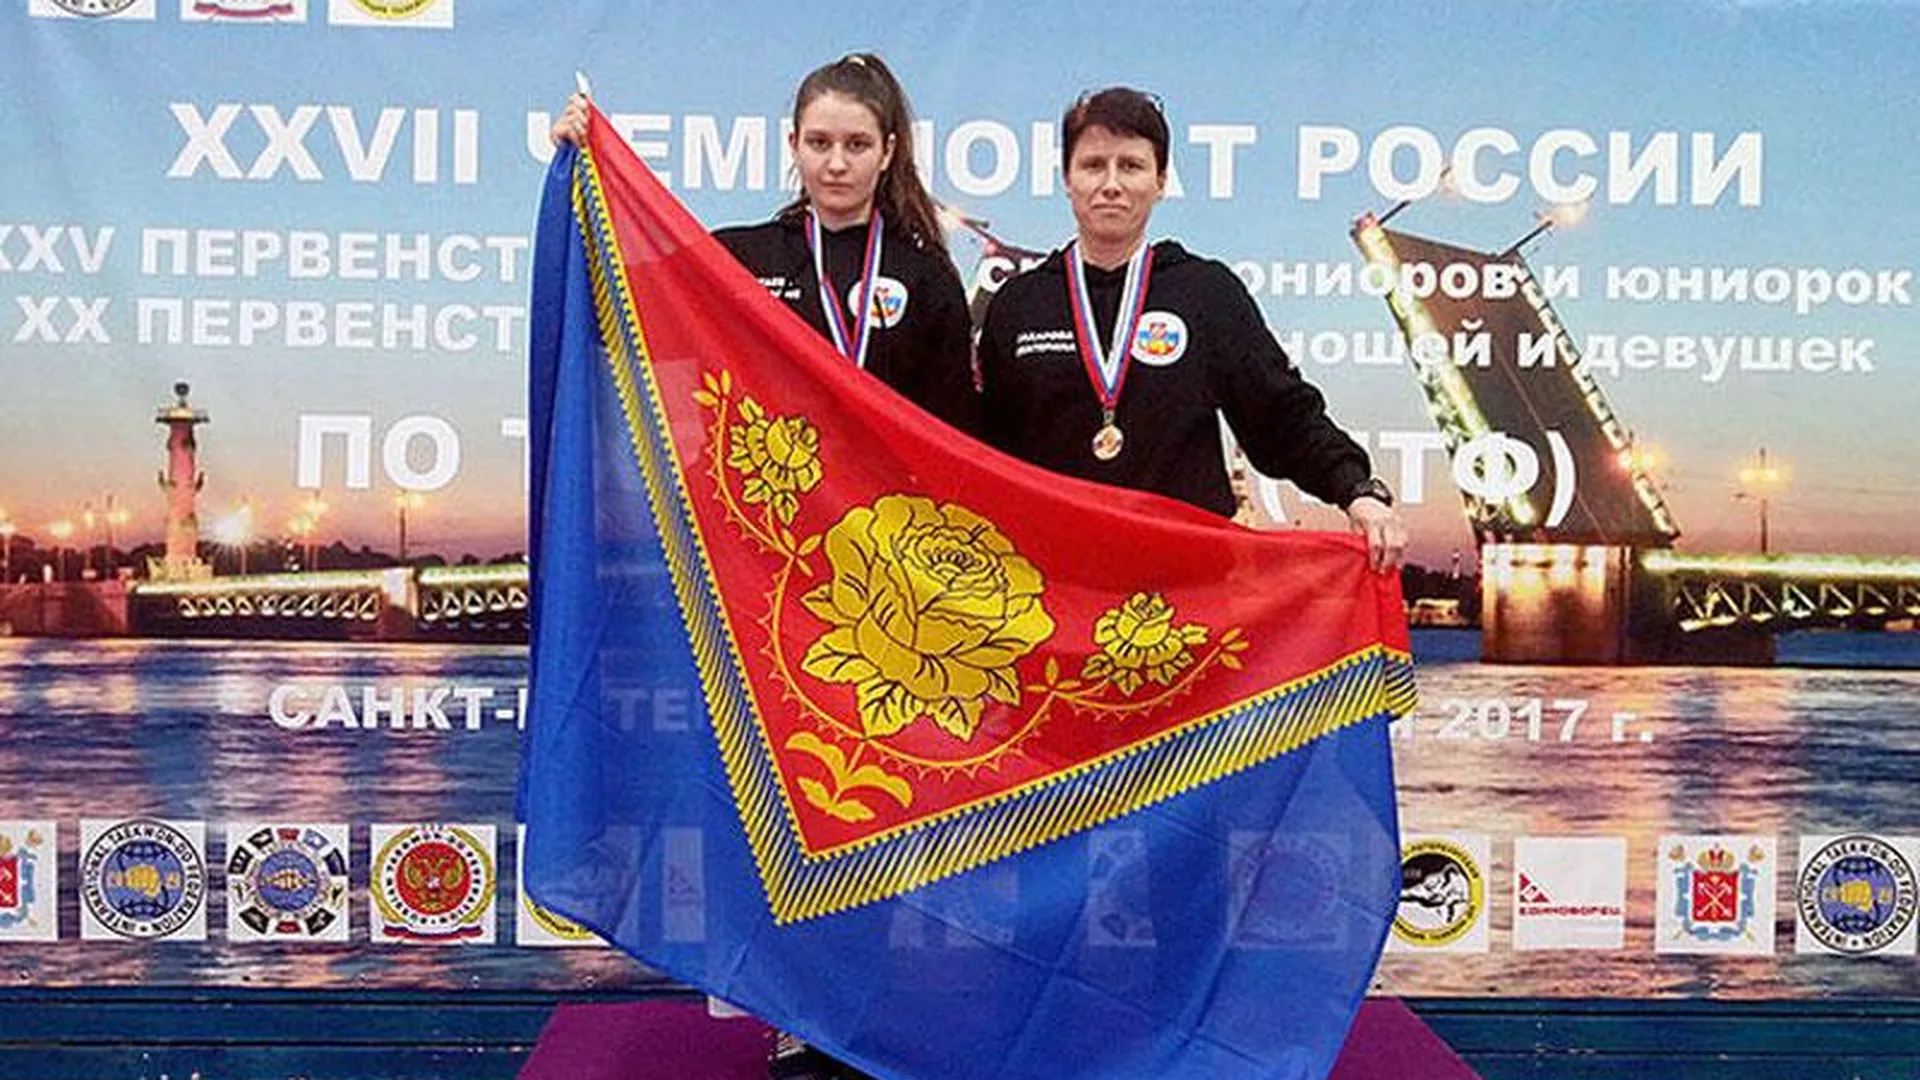 Девушка из Подмосковья выиграла серебро на чемпионате по тхэквондо в Ливерпуле